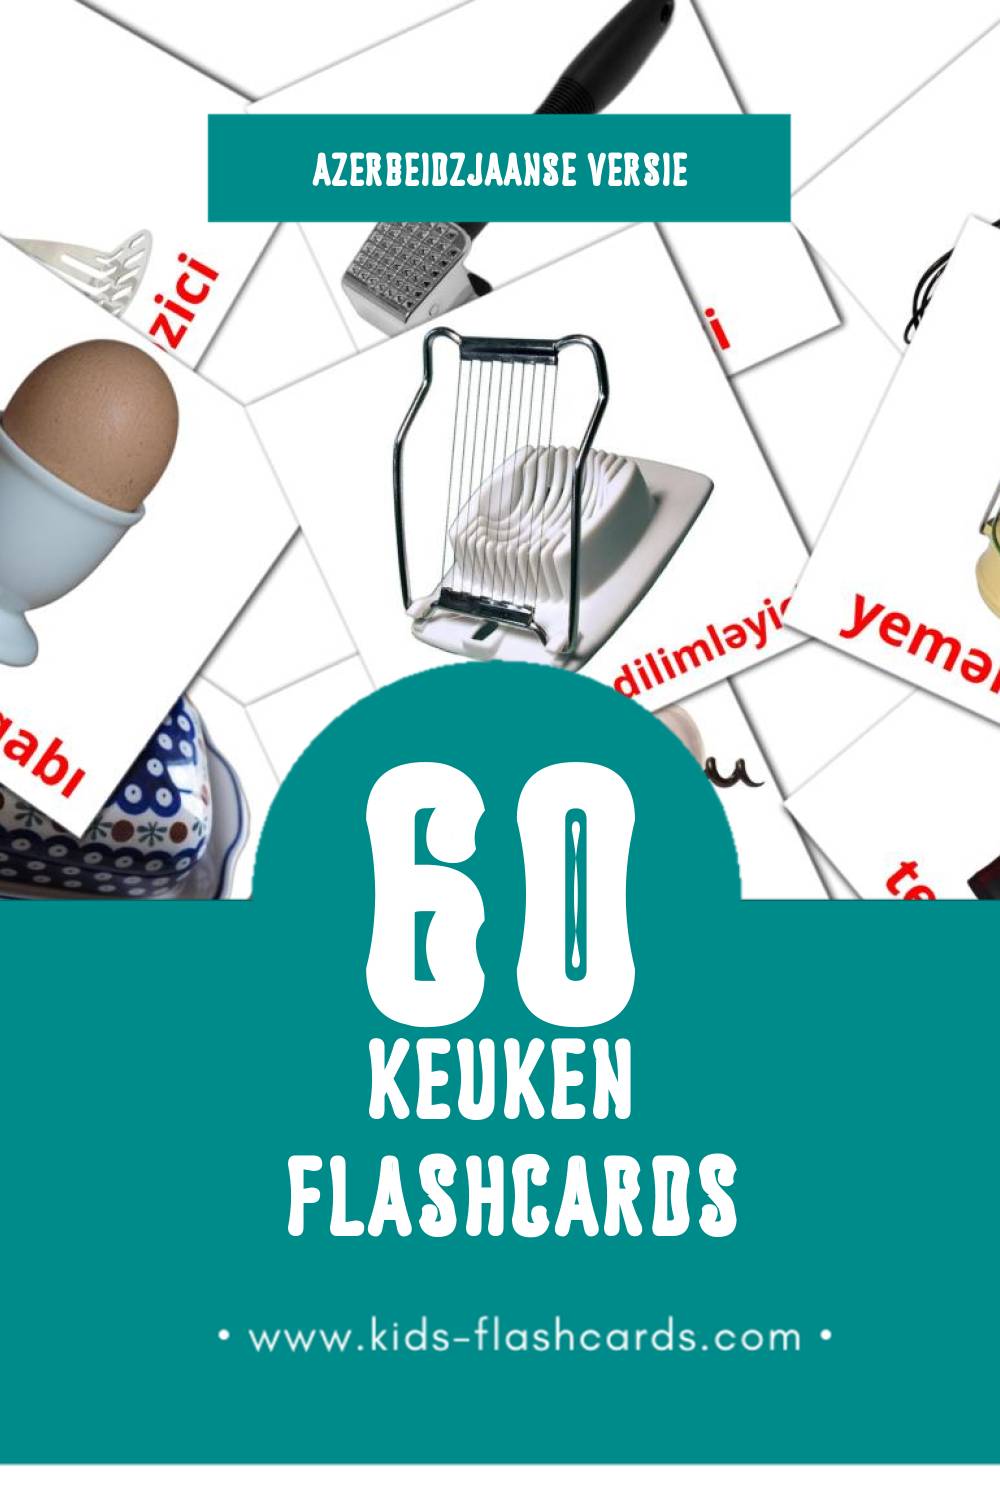 Visuele Mətbəx Flashcards voor Kleuters (60 kaarten in het Azerbeidzjaans)